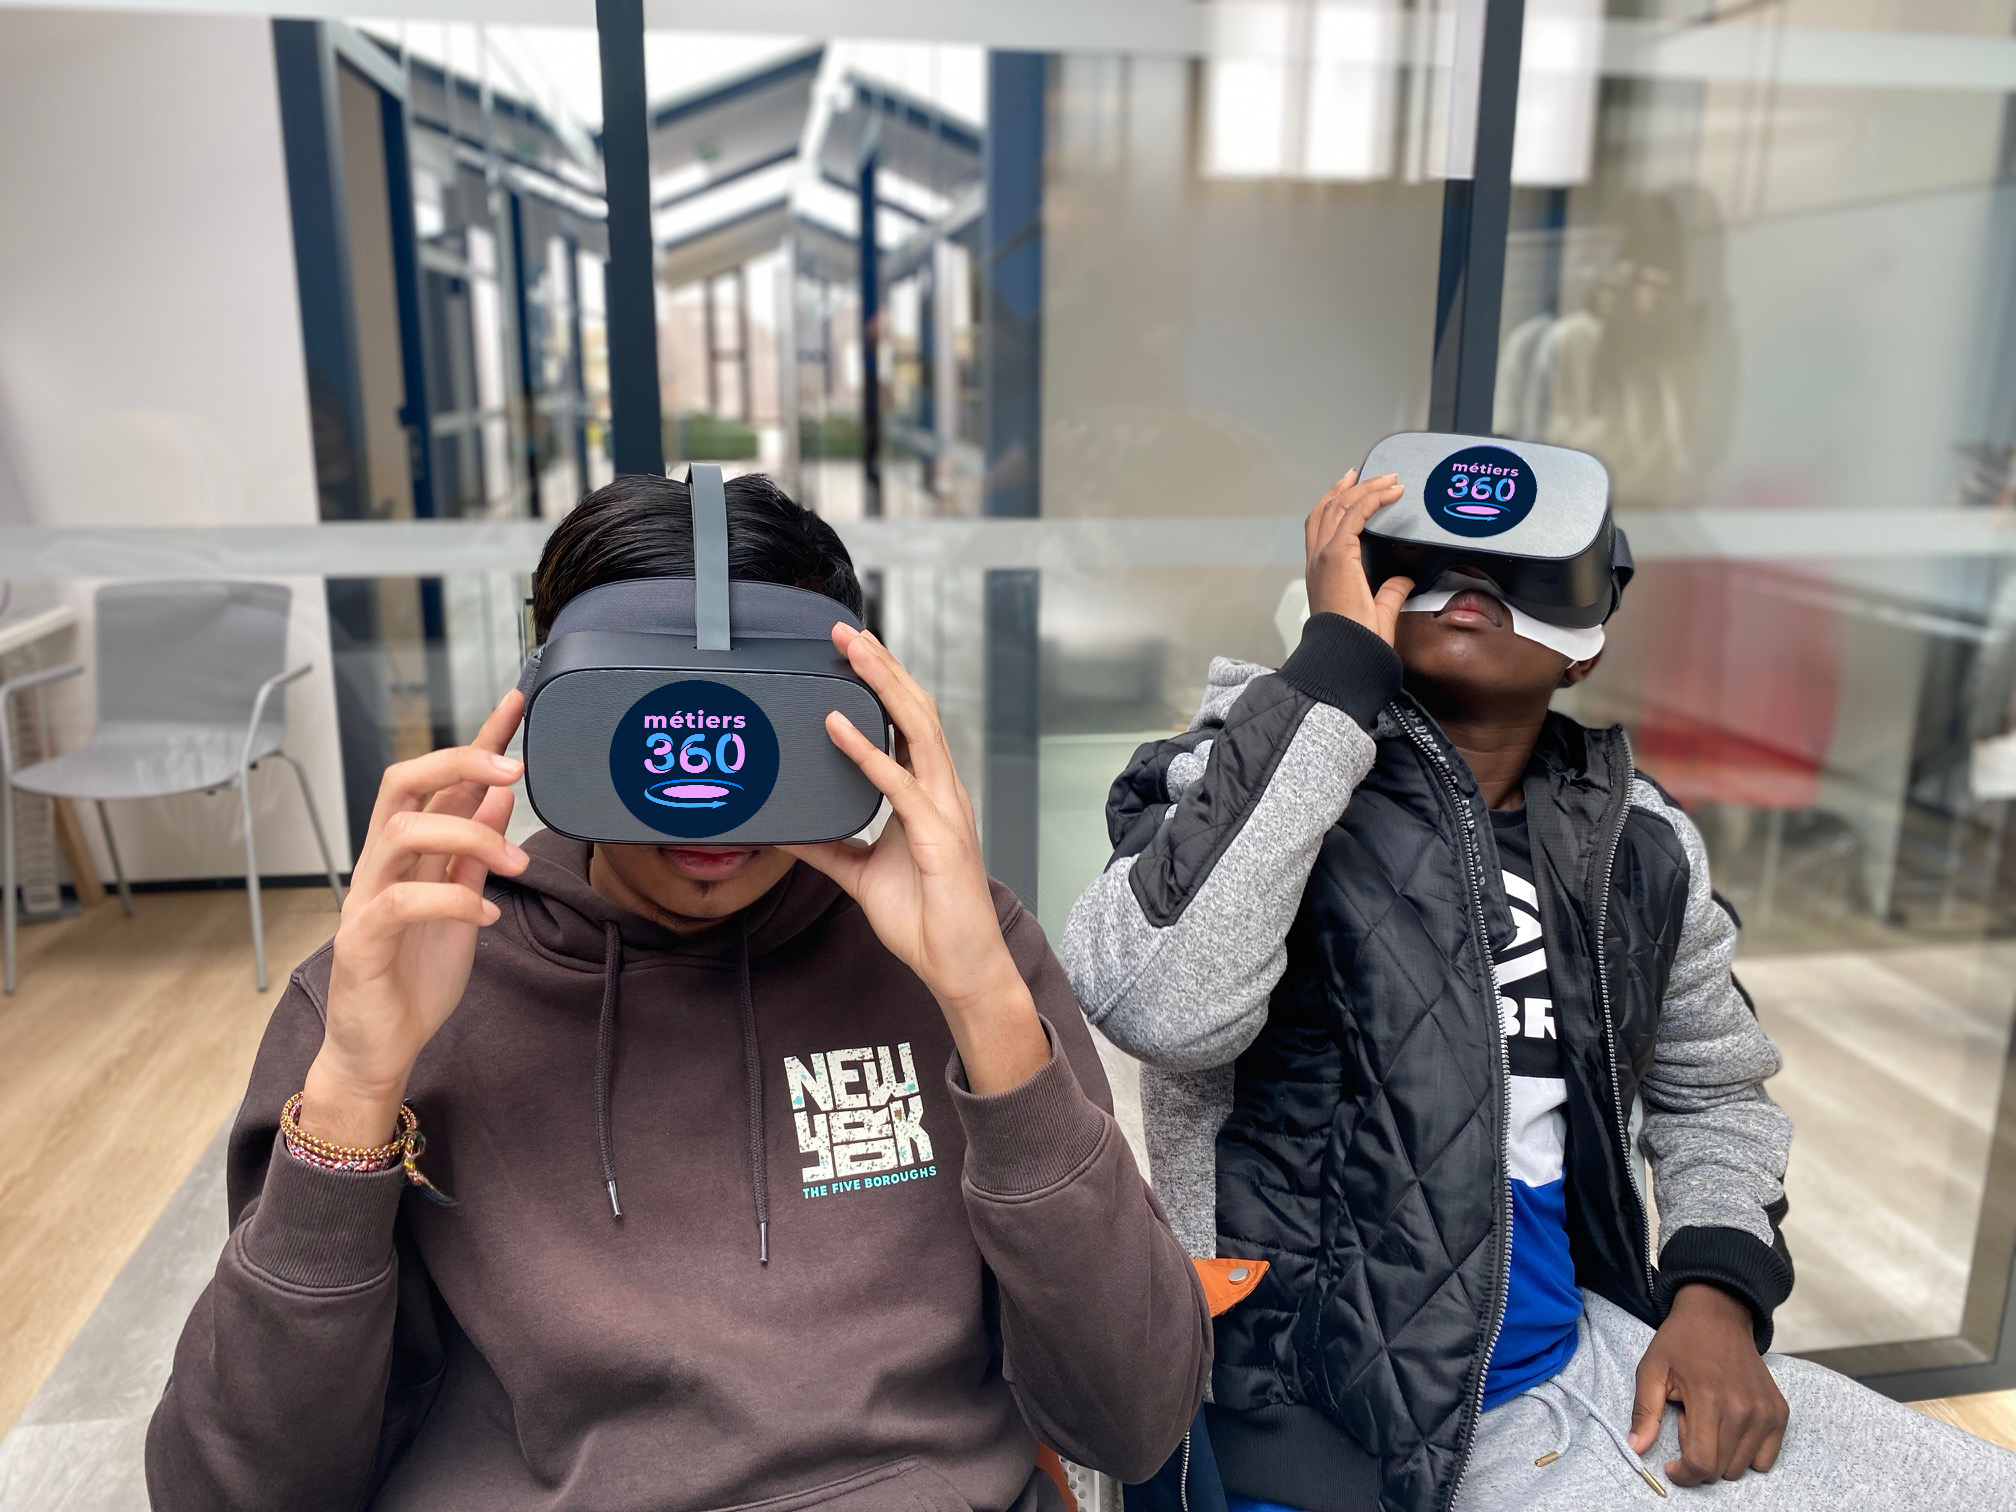 Découverte des métiers au collège avec la réalité virtuelle